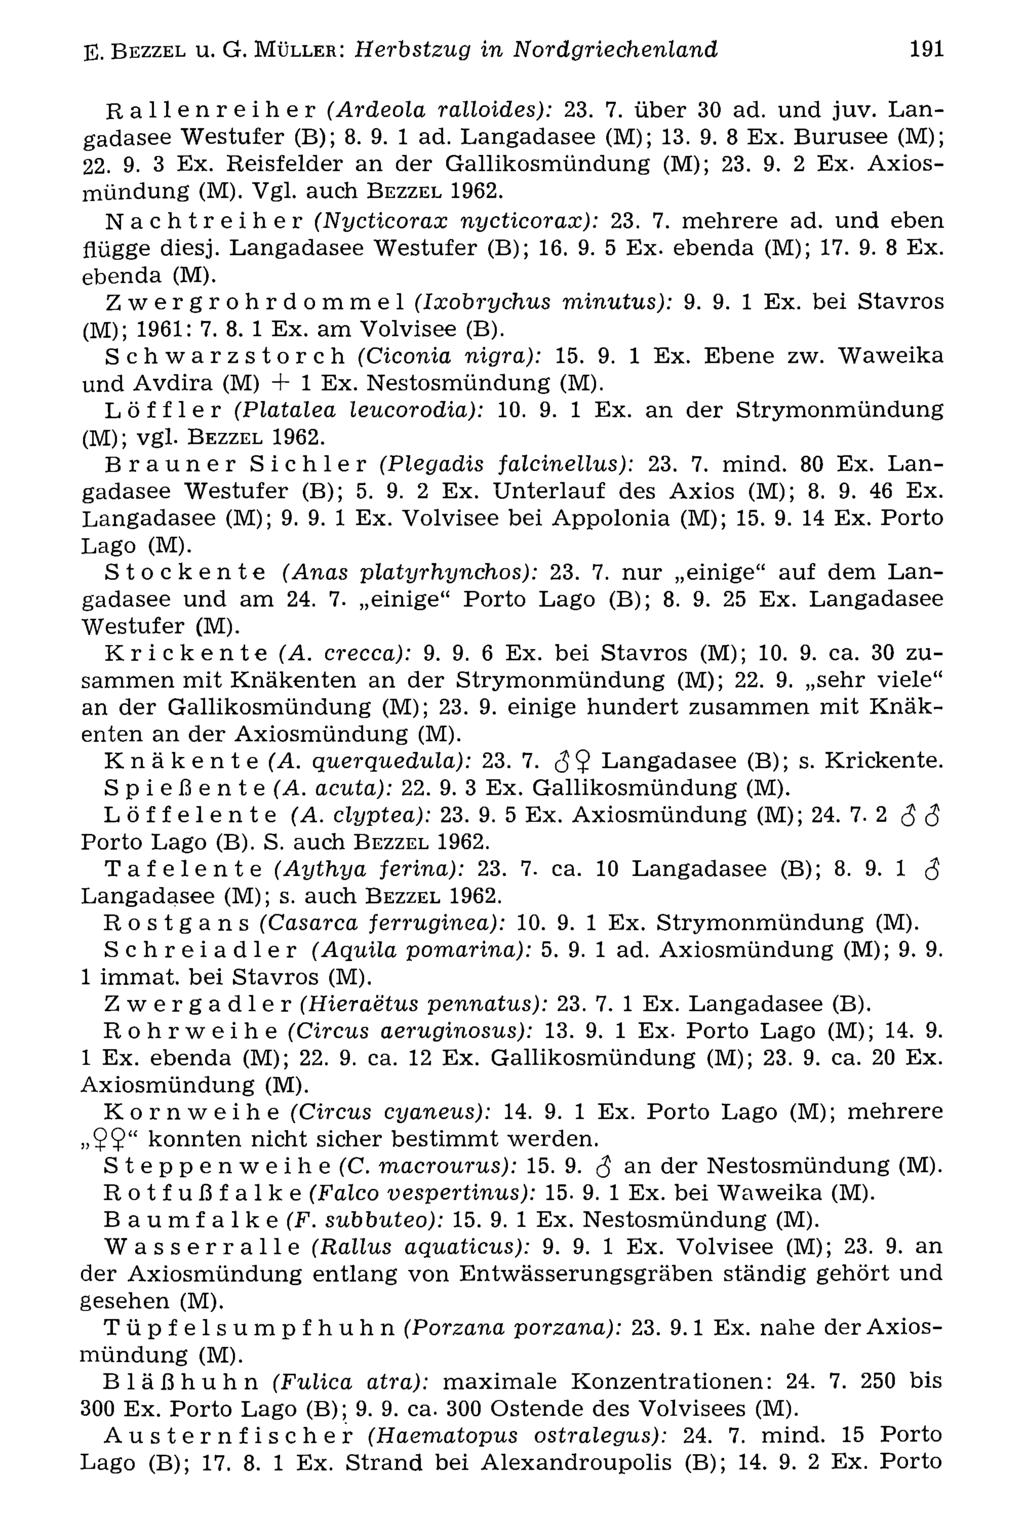 E. B e z z e l u. G. MOrnithologische ü l l e r : Herbstzug Gesellschaft Bayern, in download Nordgriechenland unter www.biologiezentrum.at 191 Rallenreiher (Ardeola ralloides): 23. 7. über 30 ad.